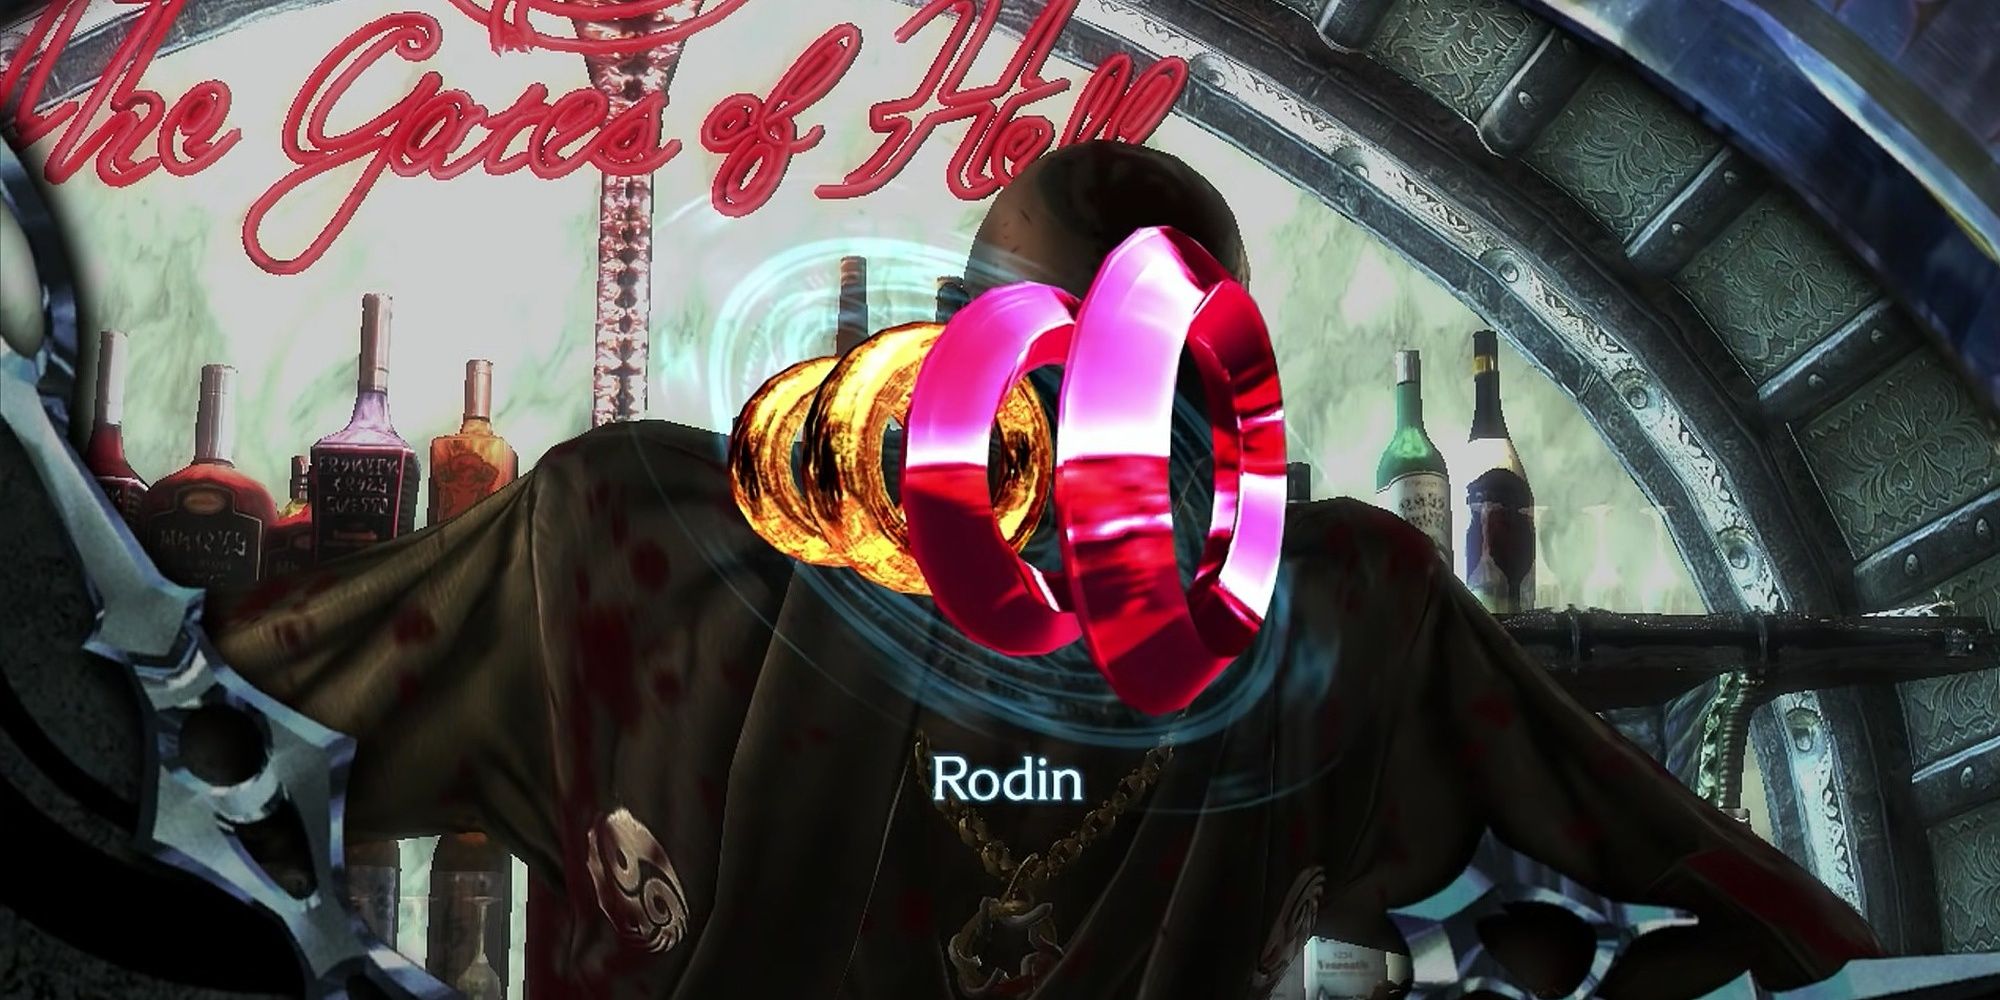 Rodin weapon unlock screen in Bayonetta 2